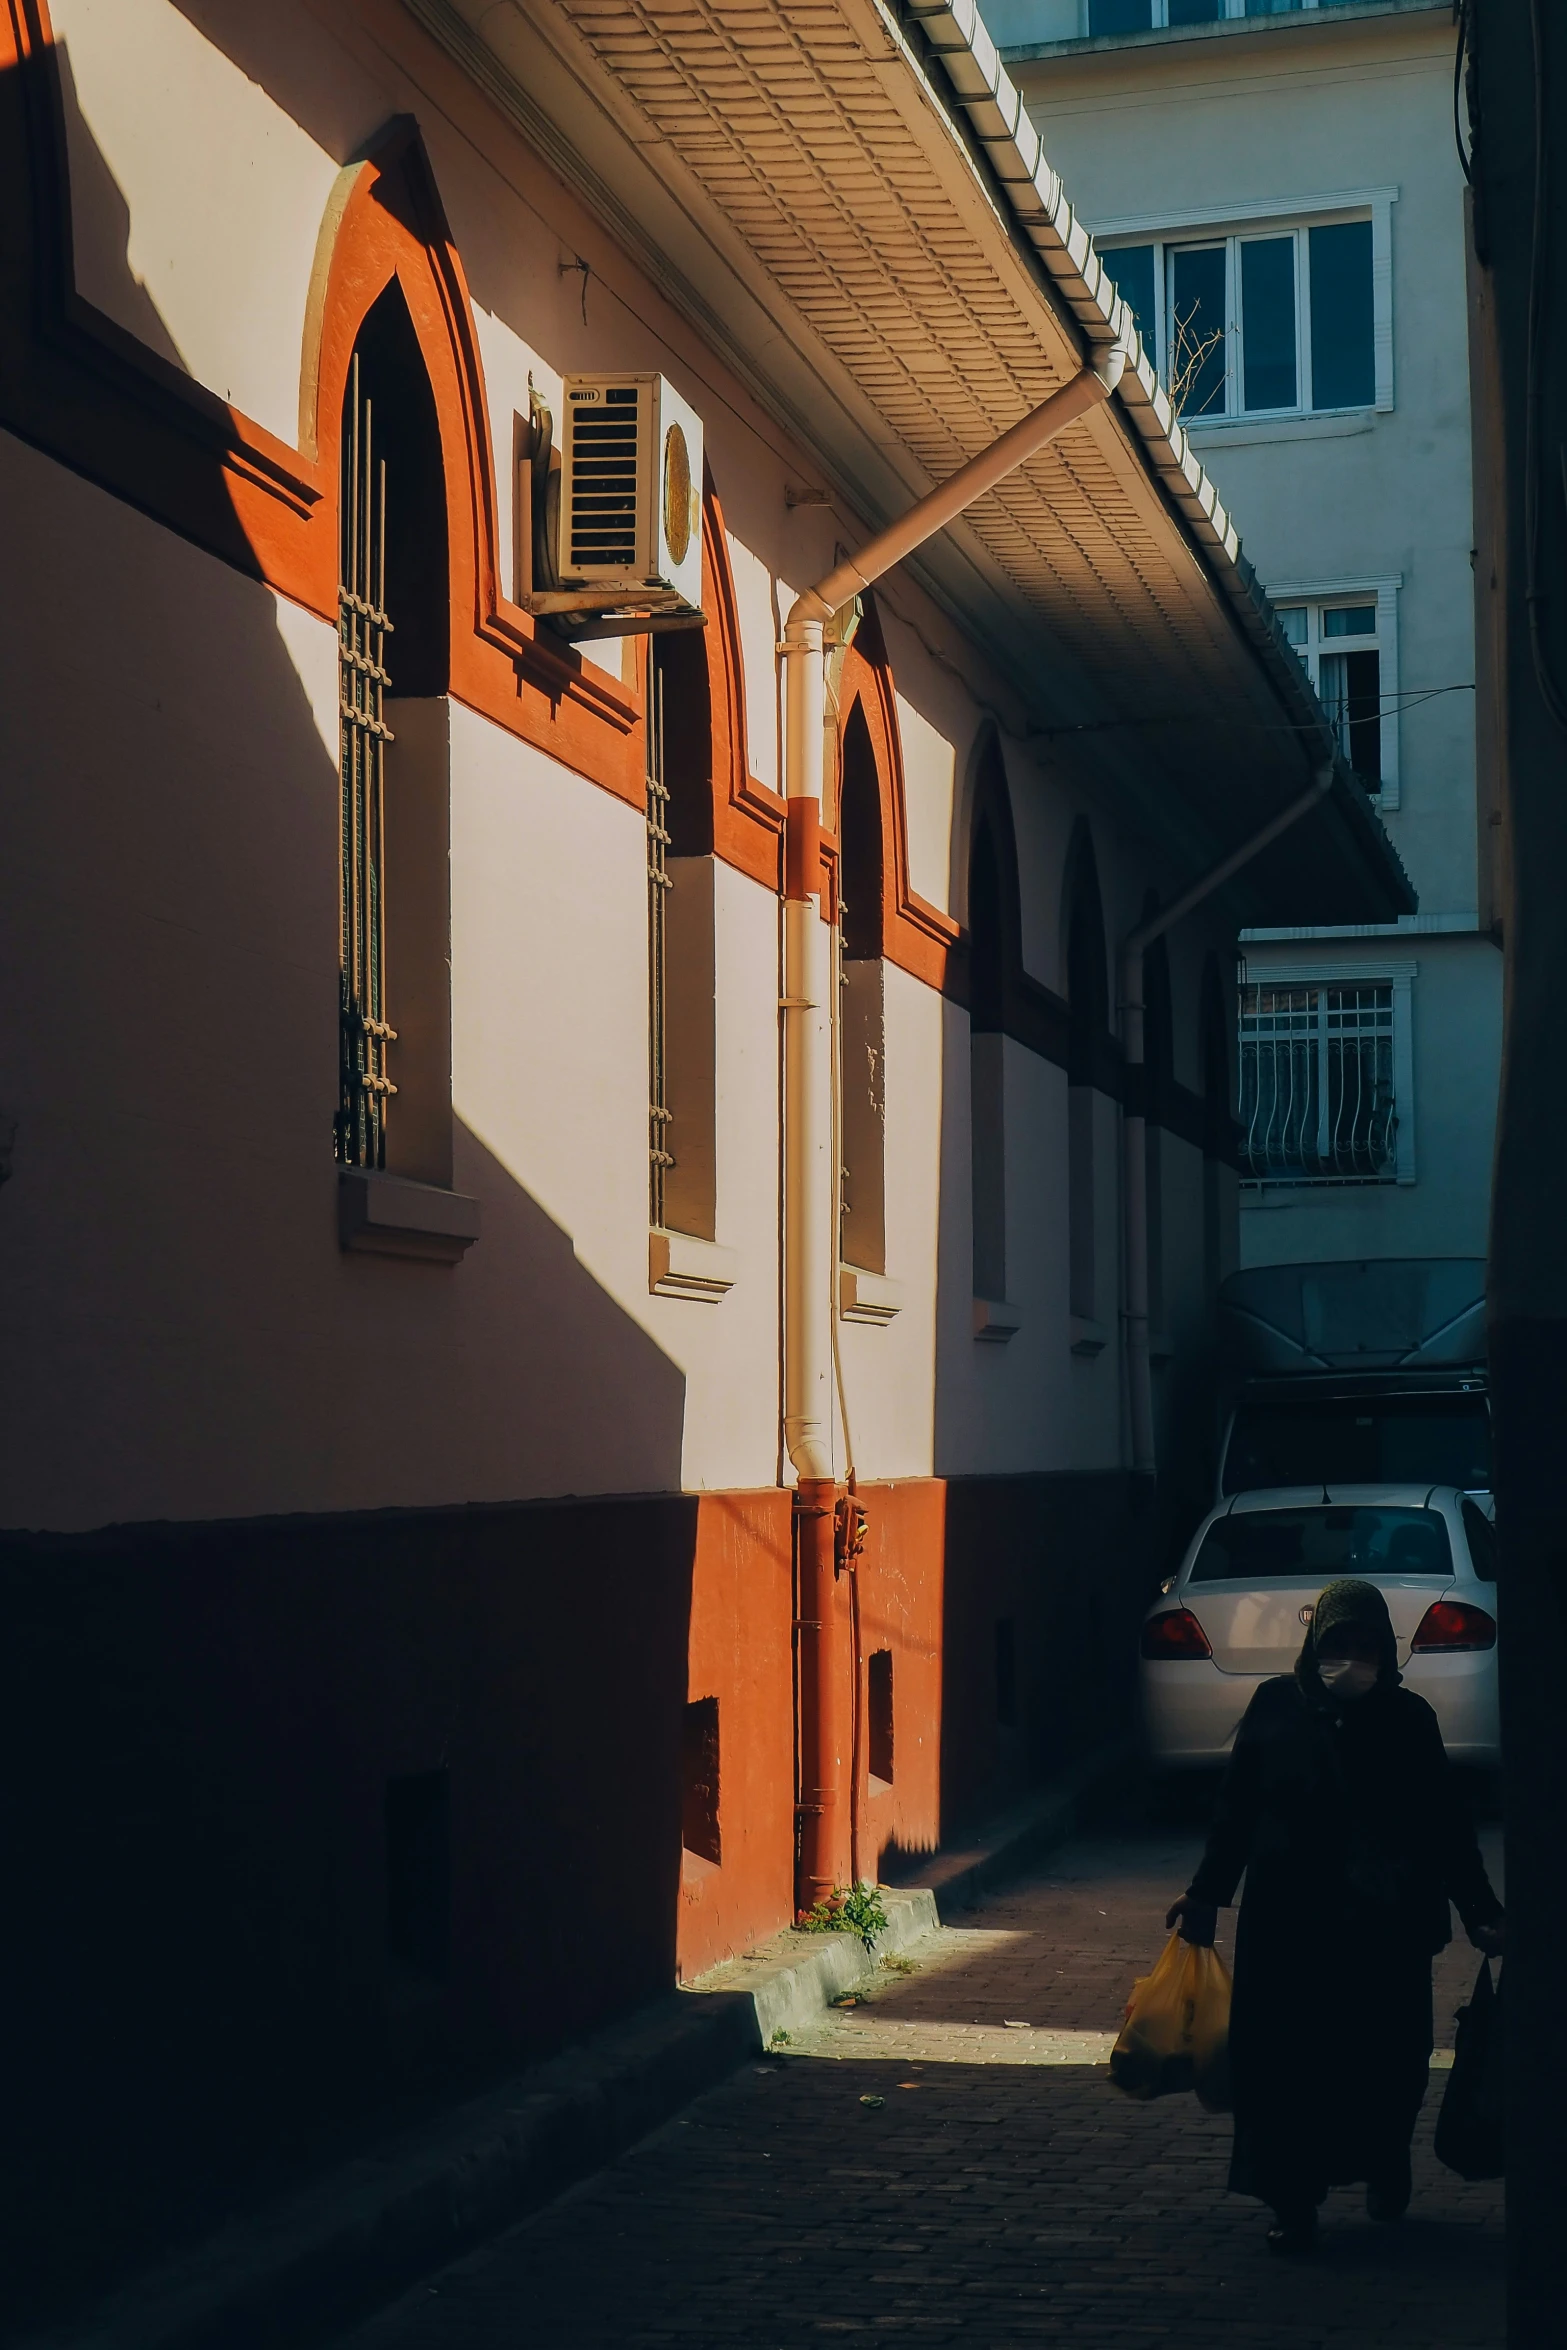 people walk through an alley between buildings